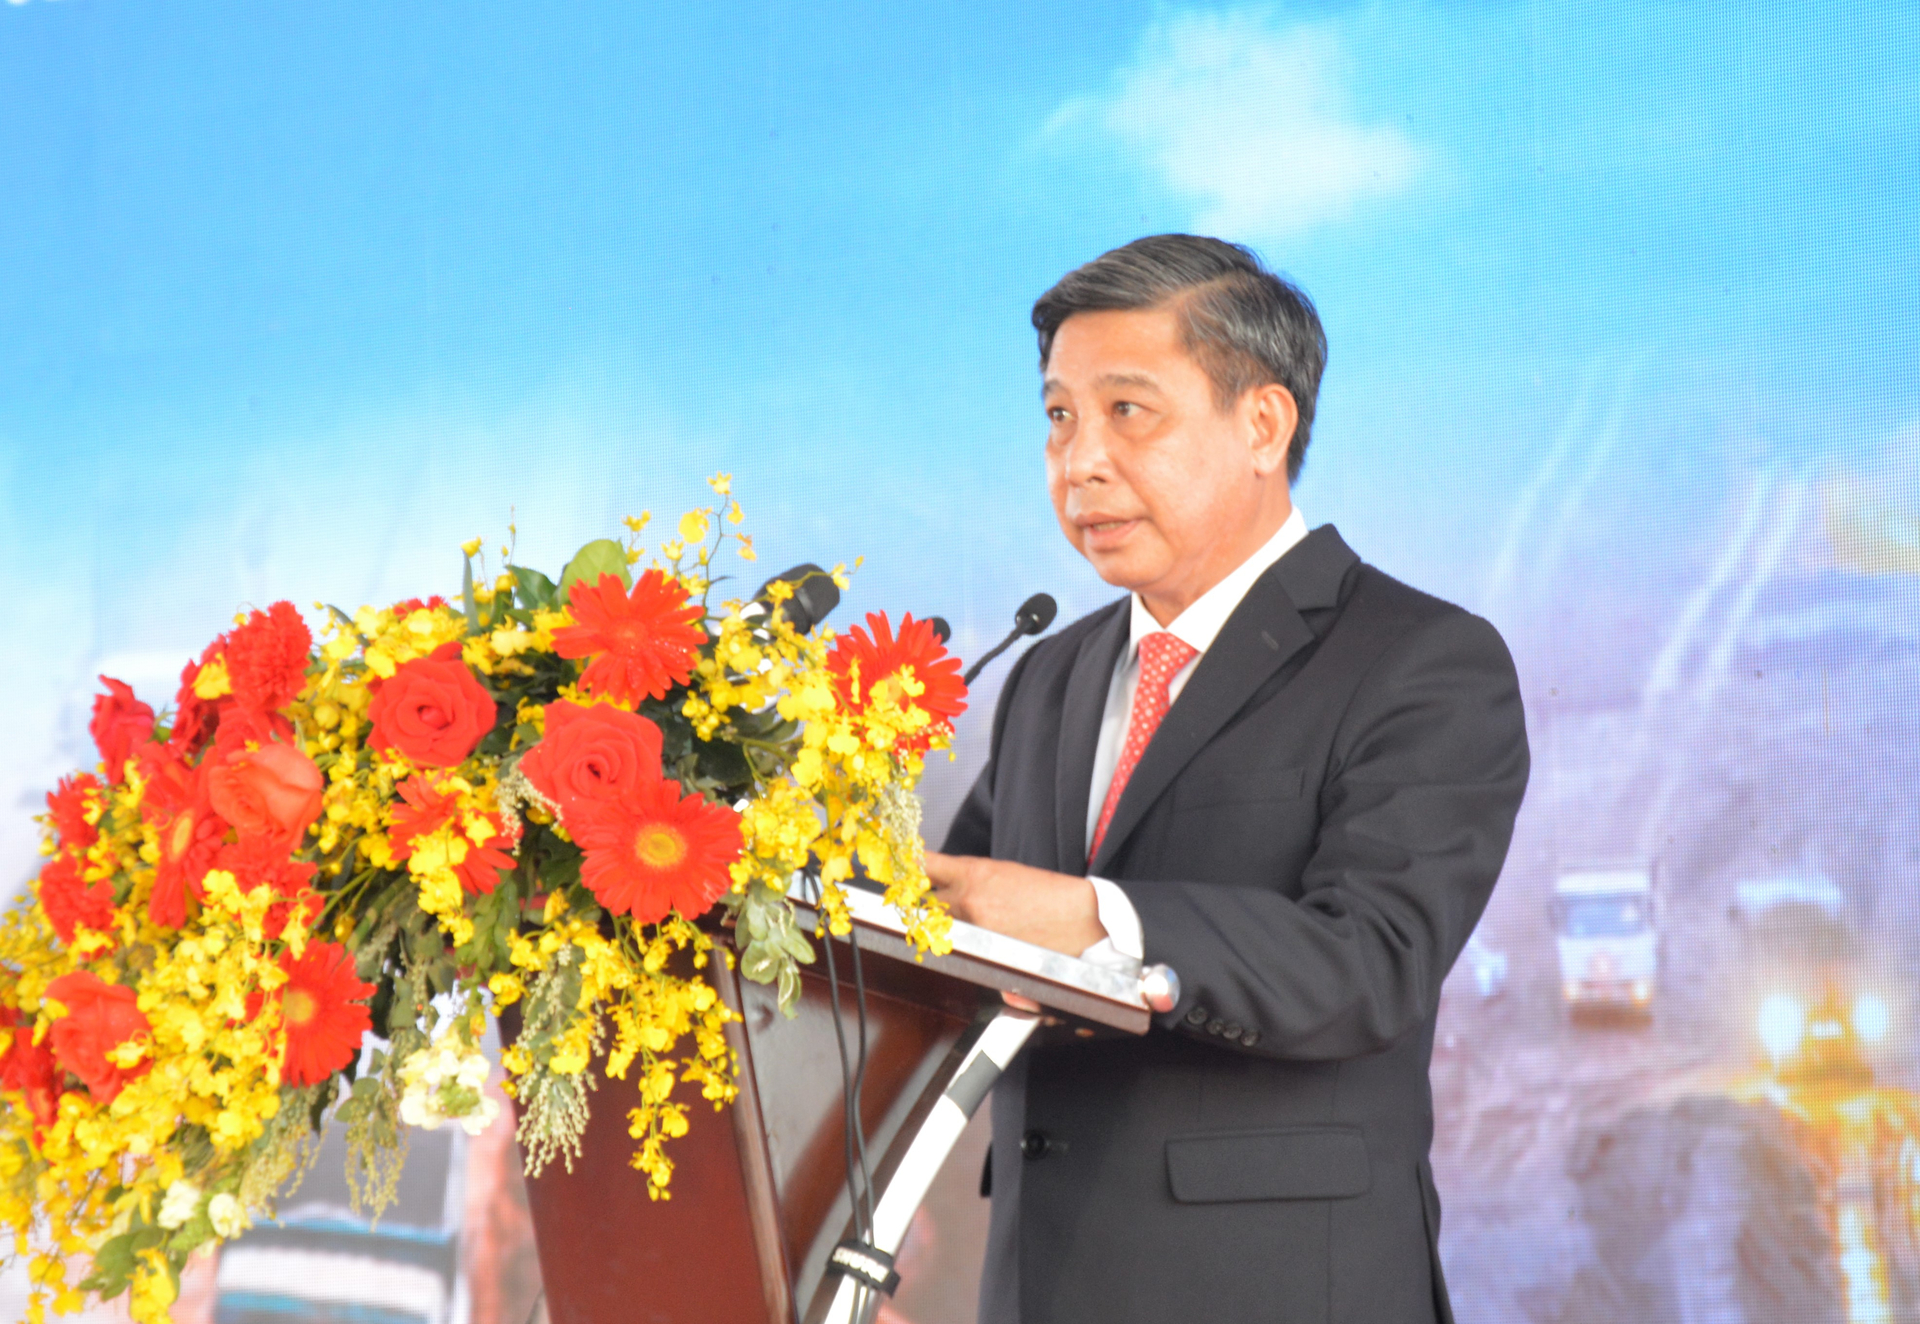 Chủ tịch UBND tỉnh Hậu Giang, ông Đồng Văn Thanh khẳng định: Địa phương luôn sát cánh cùng đơn vị thi công để sớm hoàn thành dự án.